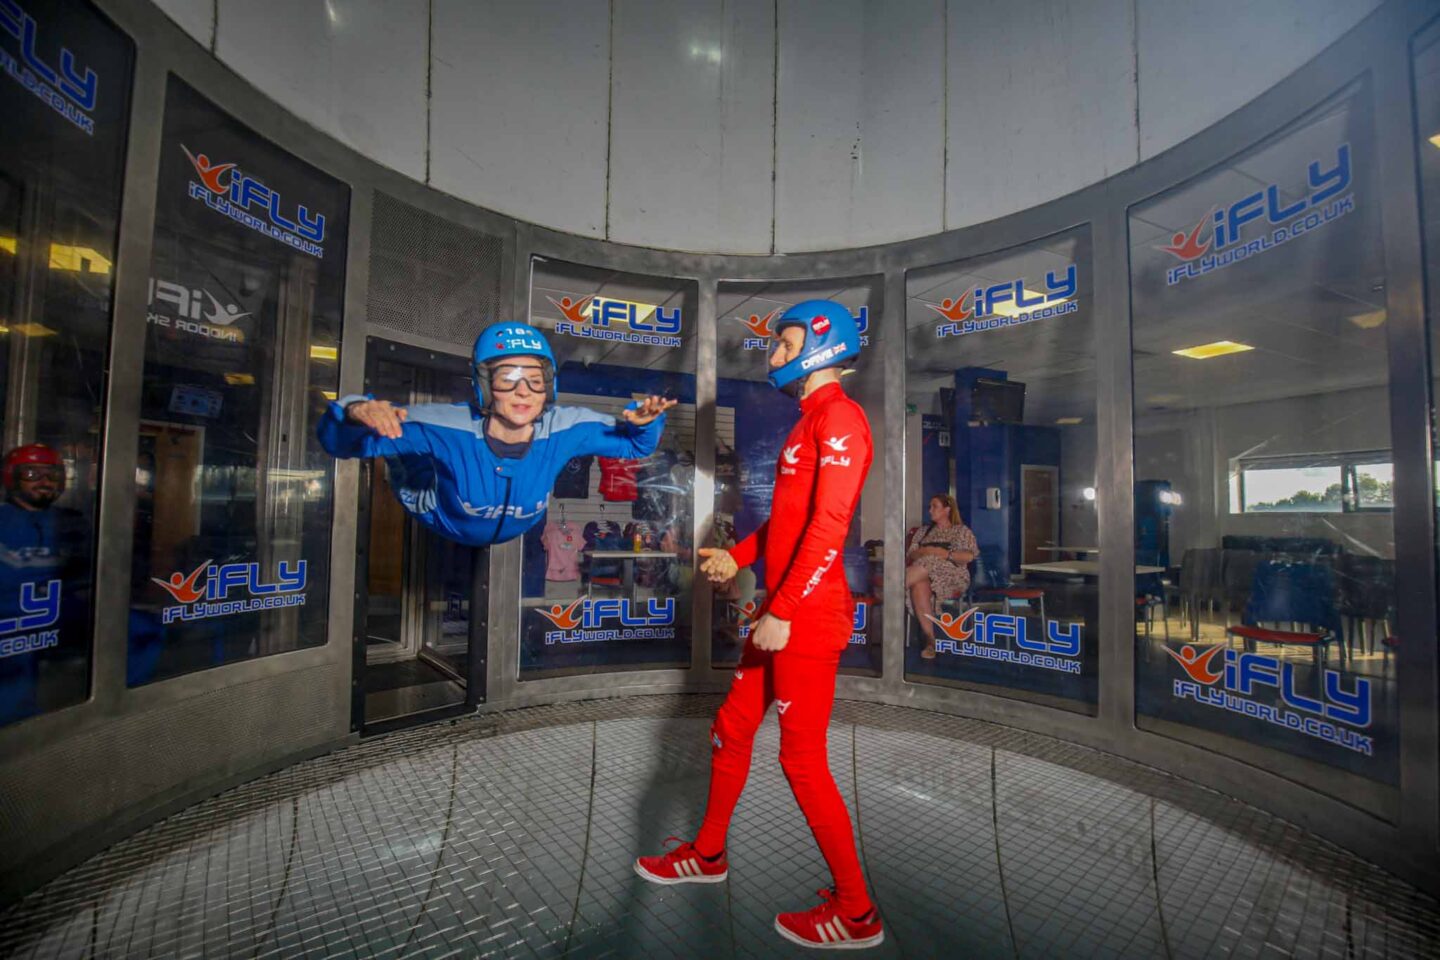 indoor activities in manchester, Women at indoor skydive iFly Manchester